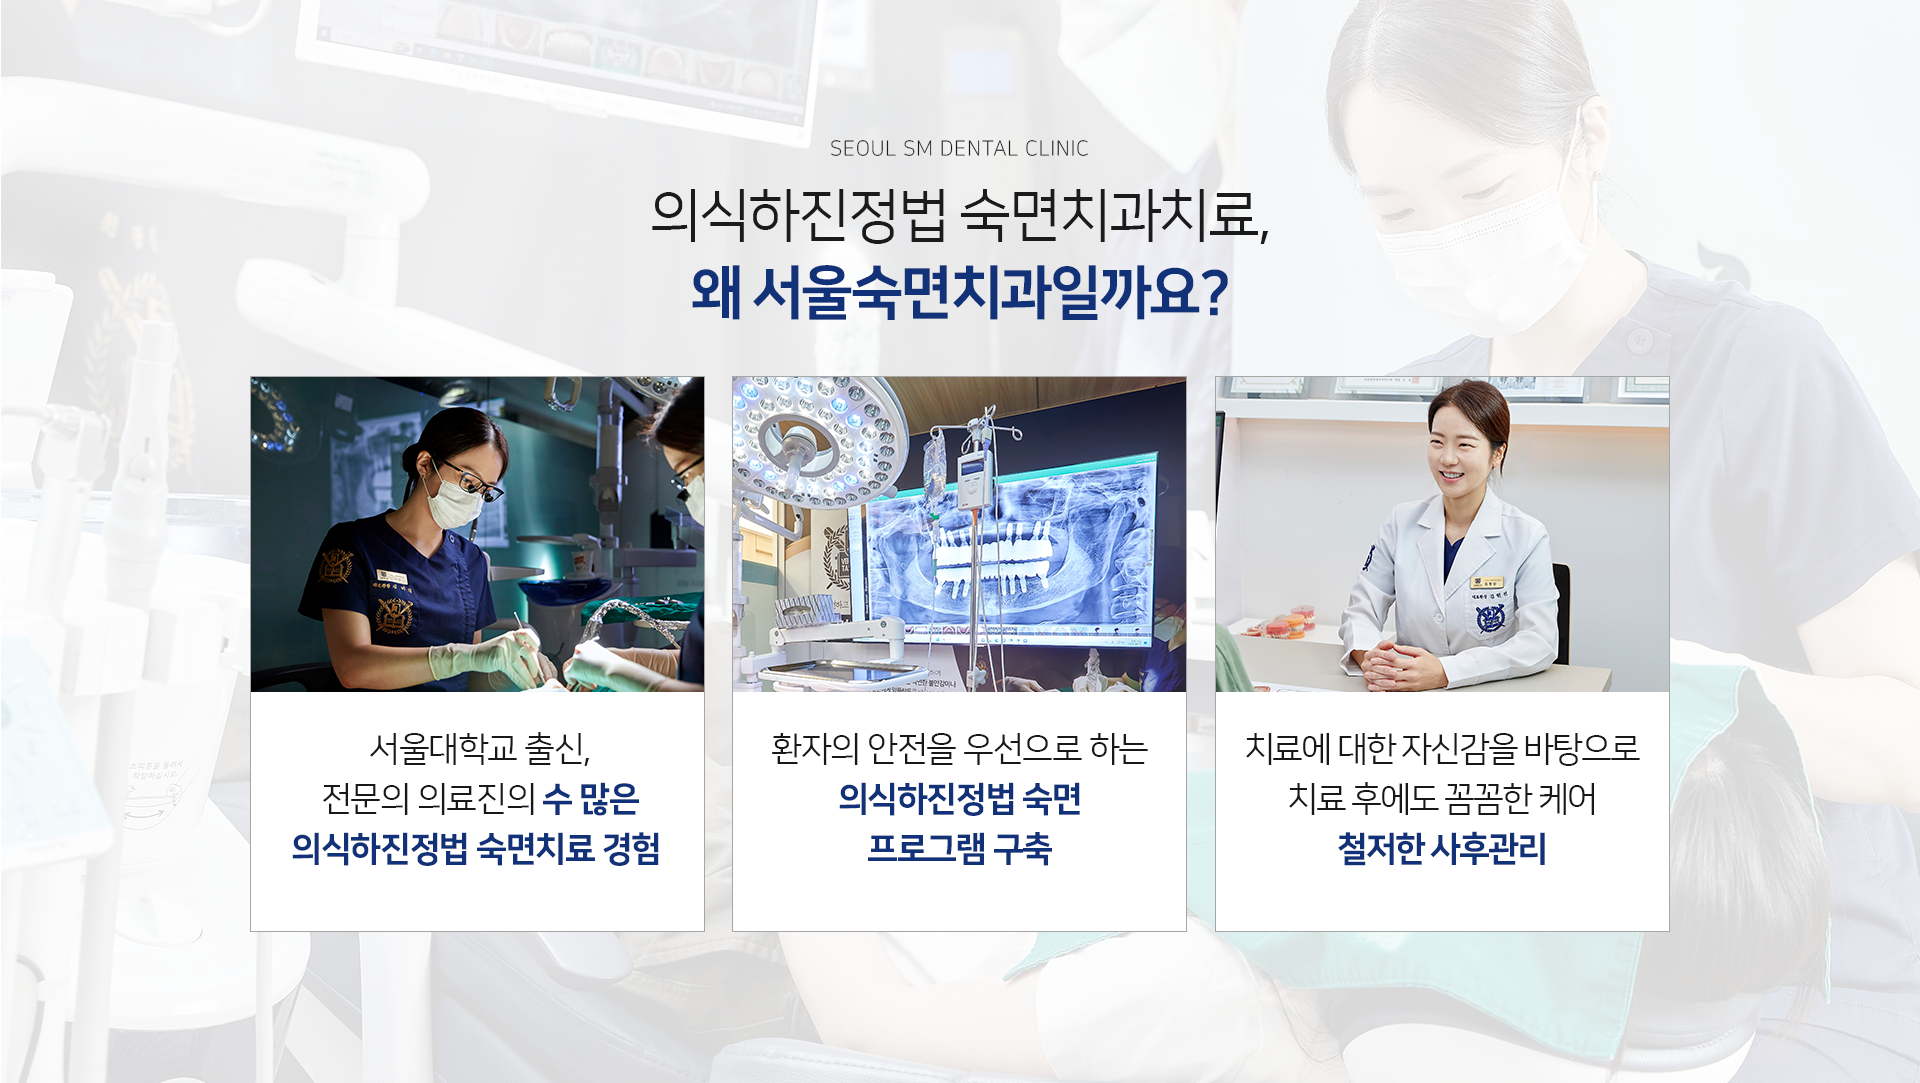 서울대학교-출신-전문의-의료진의-수-많은-숙면치료-경험-환자의-안전을-우선으로-하는-안전-숙면-프로그램-구축-치료에-대한-자신감을-바탕으로-치료-후에도-꼼꼼한-케어-철저한-사후관리